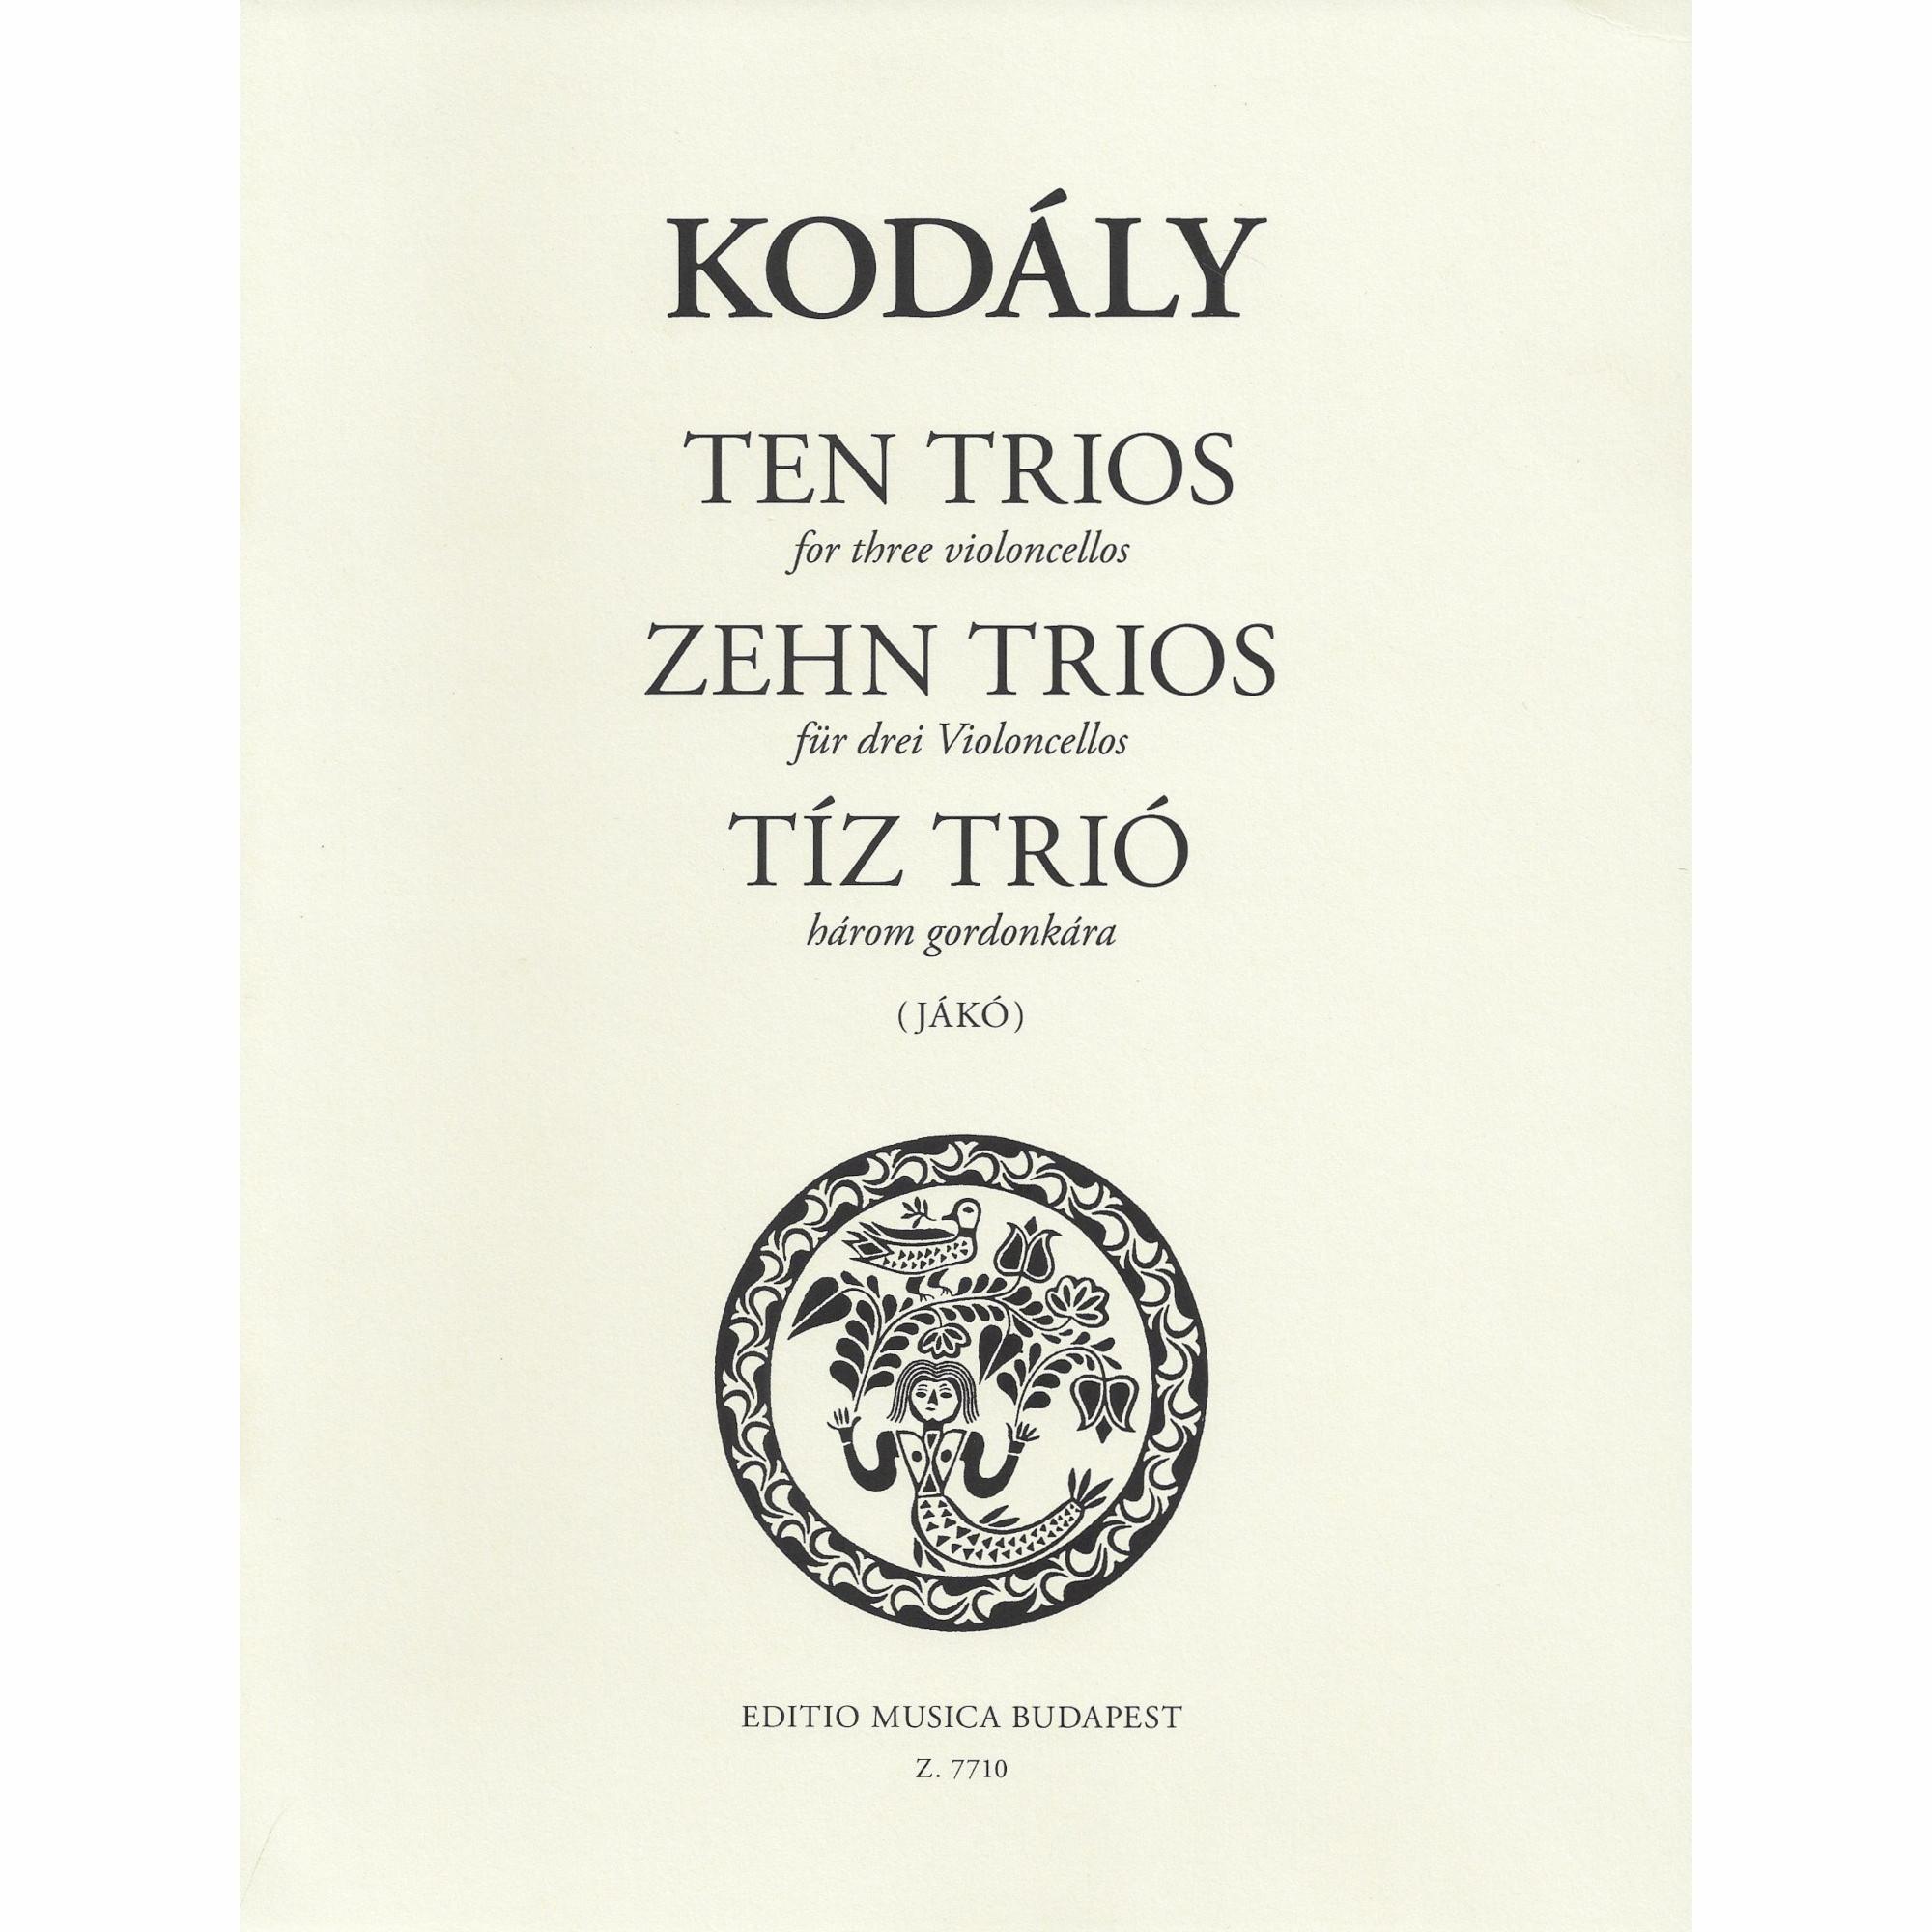 Kodaly -- Ten Trios for Three Cellos